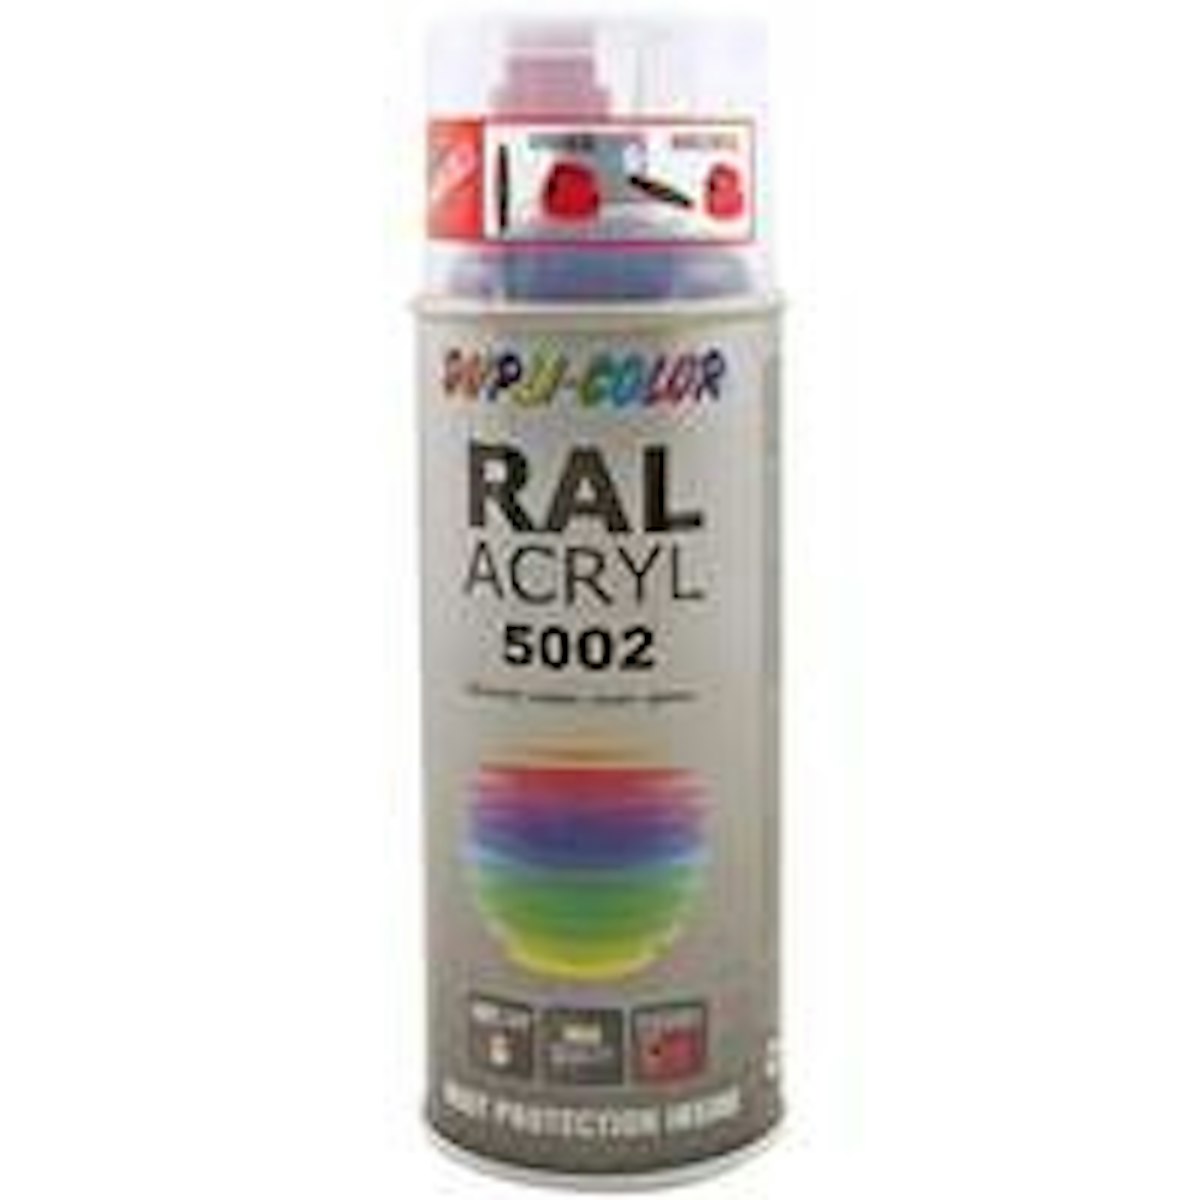 RAL-Acryl-Spray 5003 saphirblau glänzend 400ml von Motip